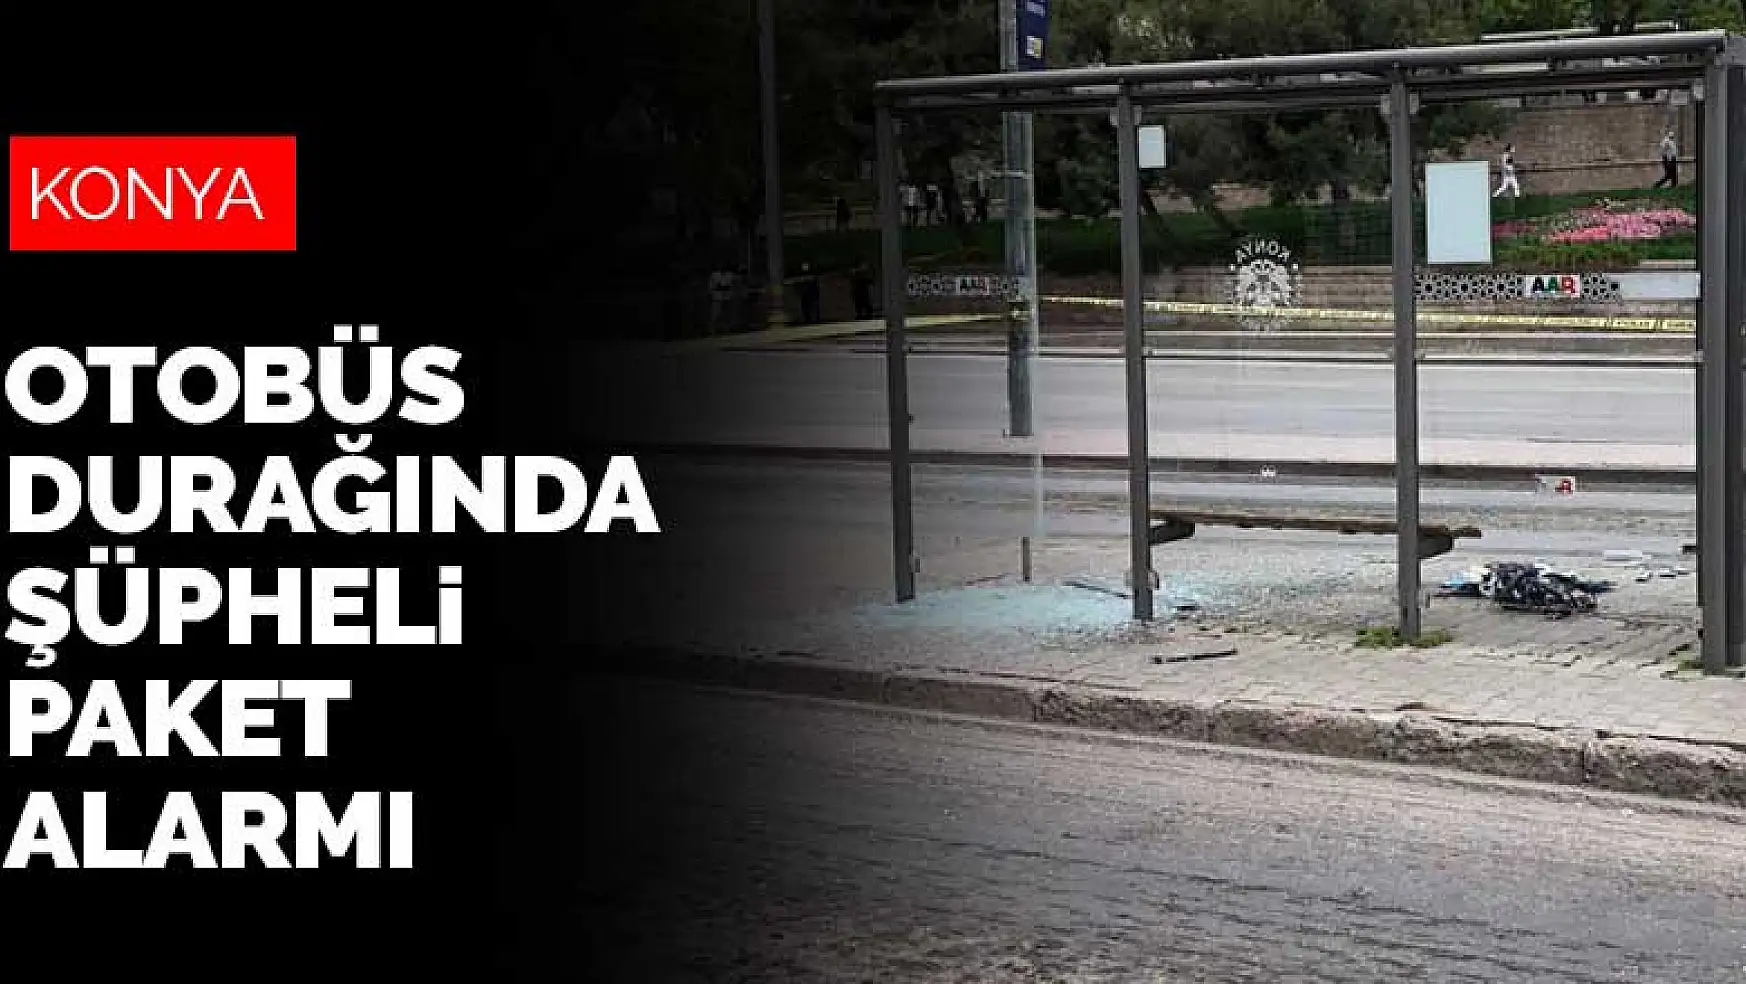 Konya'nın göbeğinde otobüs durağında şüpheli paket alarmı